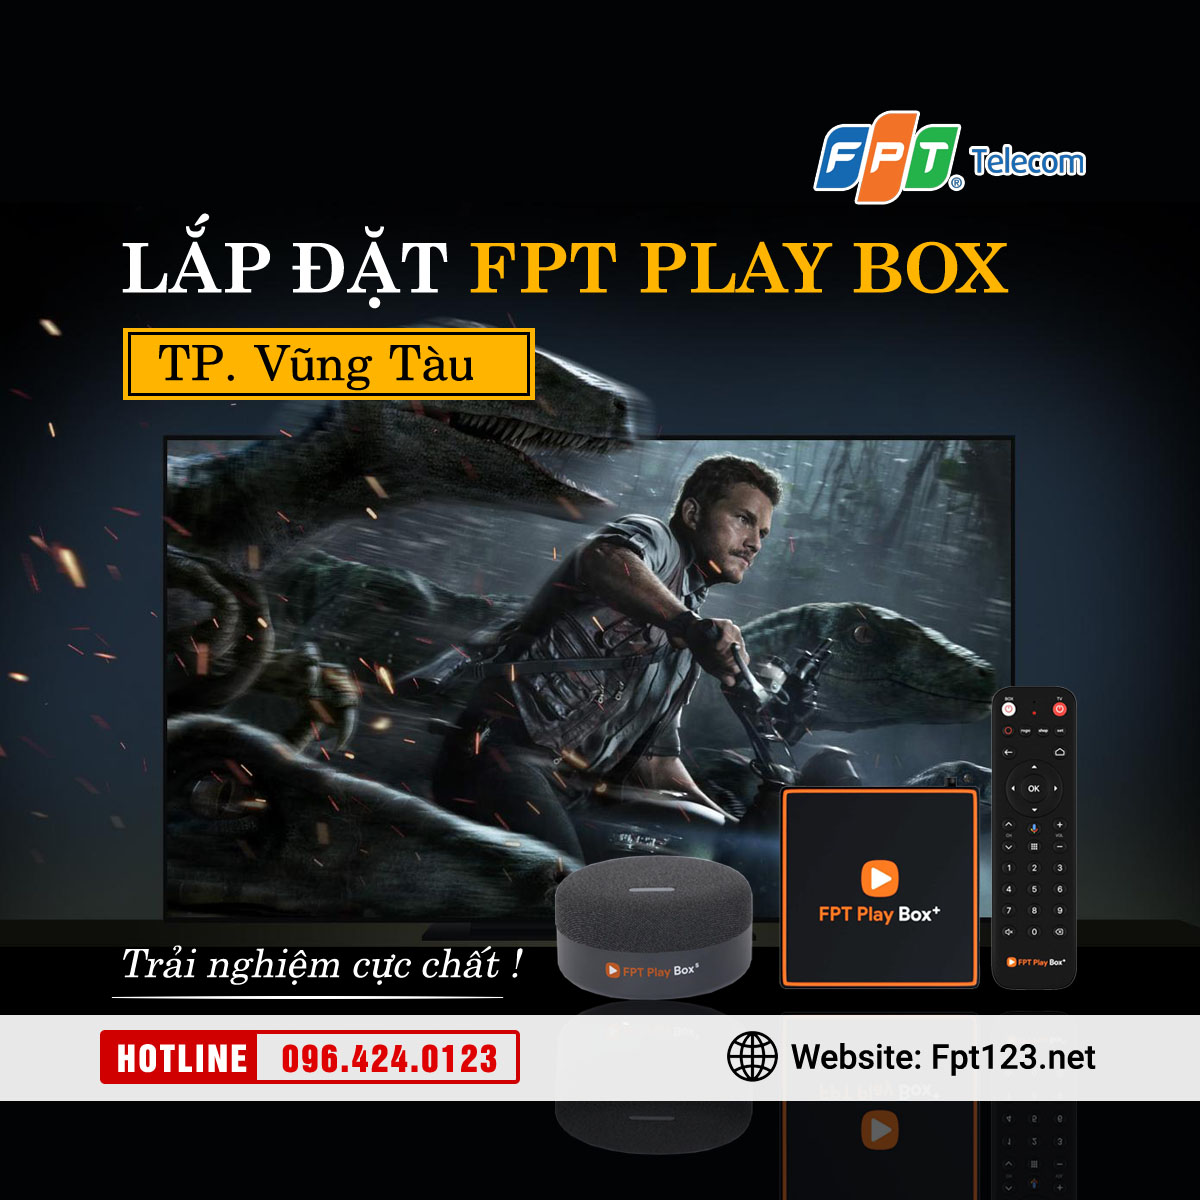 Lắp đặt FPT Play Box chính hãng tại Vũng Tàu